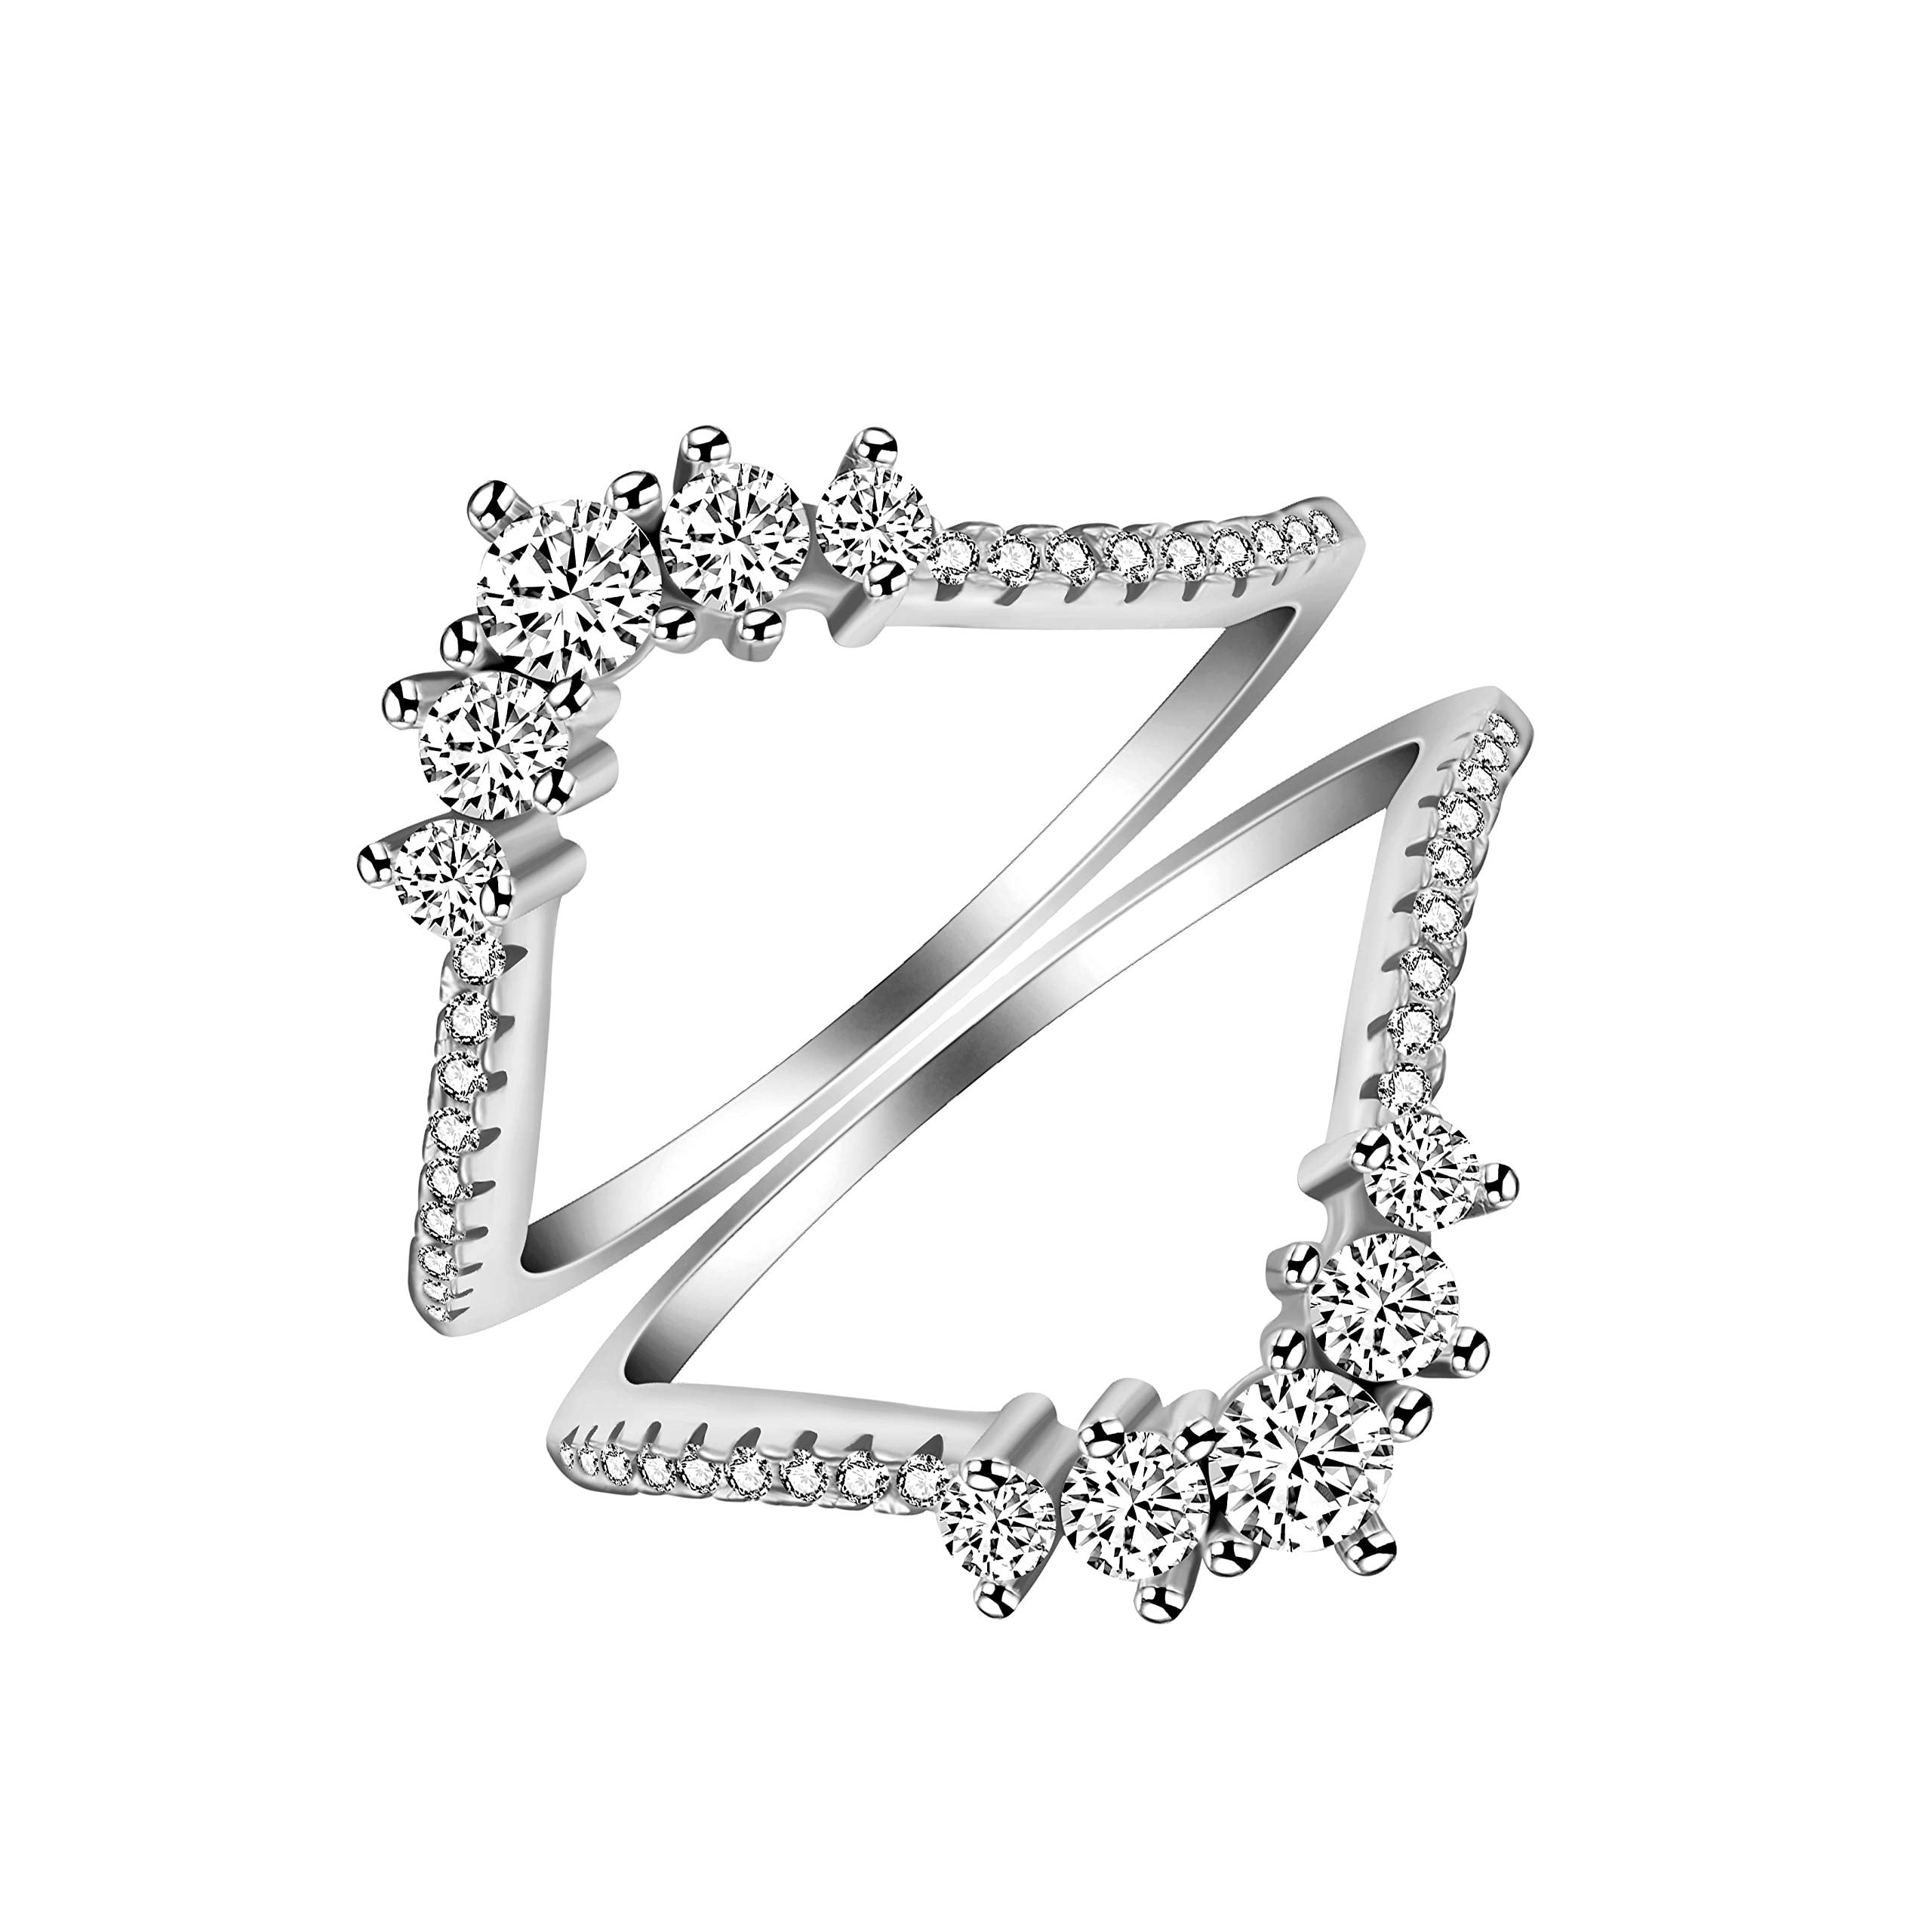 .25CT TwoBirch Silver Gorgeous Heart Shaped Pendant Chain Charm Set Black White CZ Black White CZ .25CT